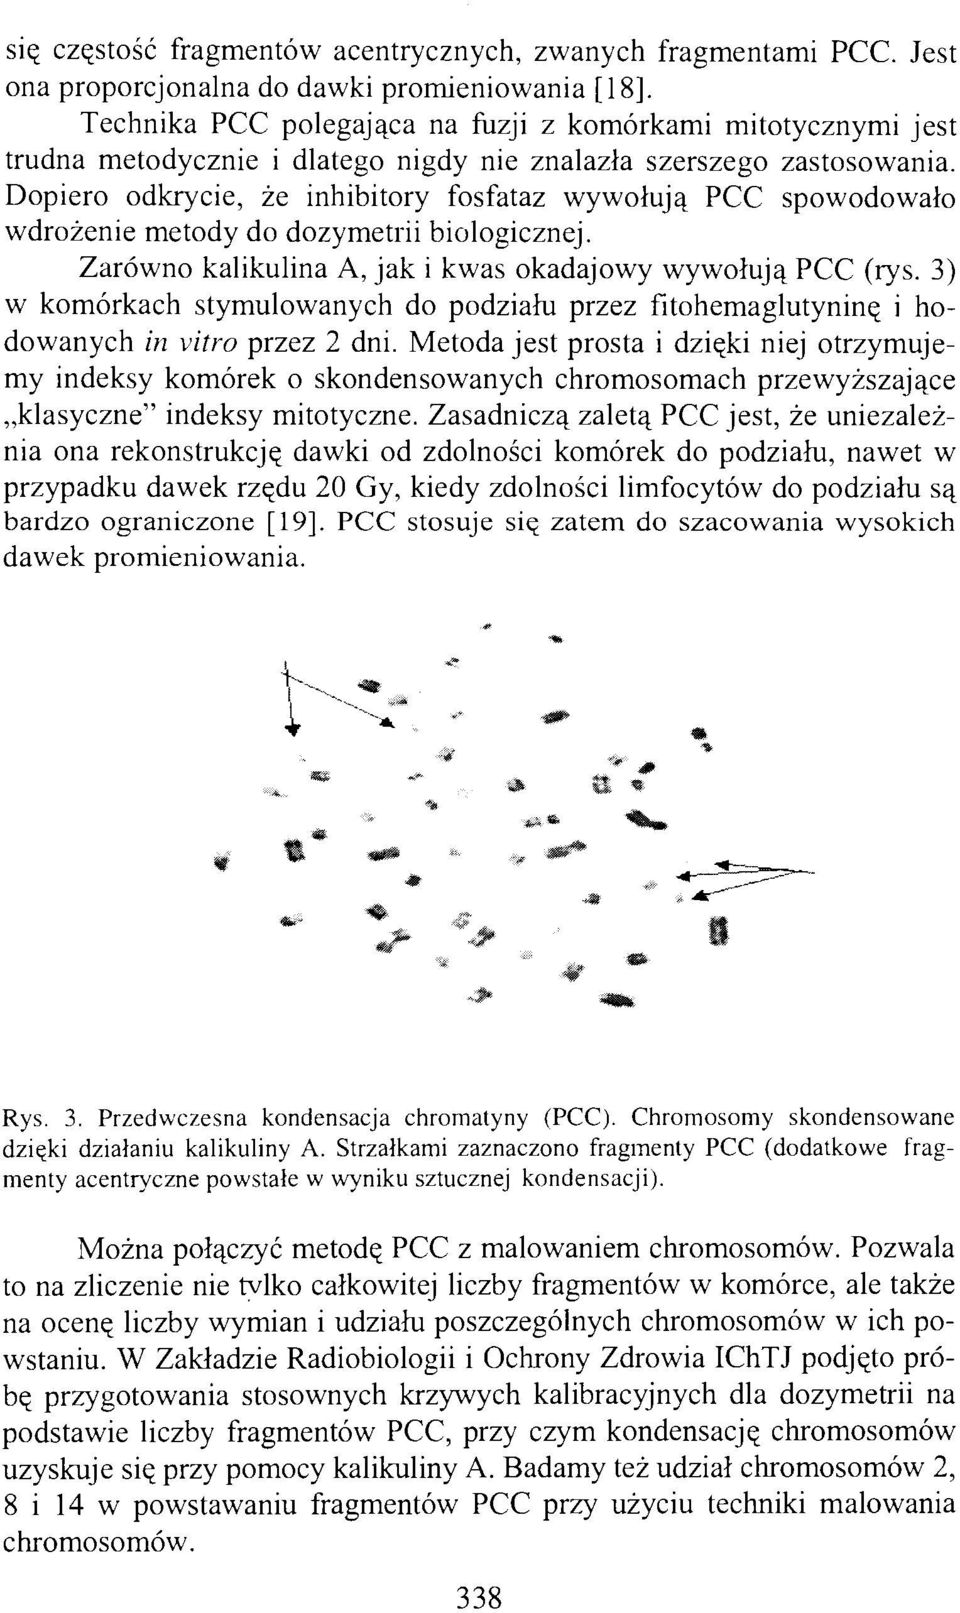 Dopiero odkrycie, że inhibitory fosfataz wywołują PCC spowodowało wdrożenie metody do dozymetrii biologicznej. Zarówno kalikulina A, jak i kwas okadajowy wywołują PCC (rys.